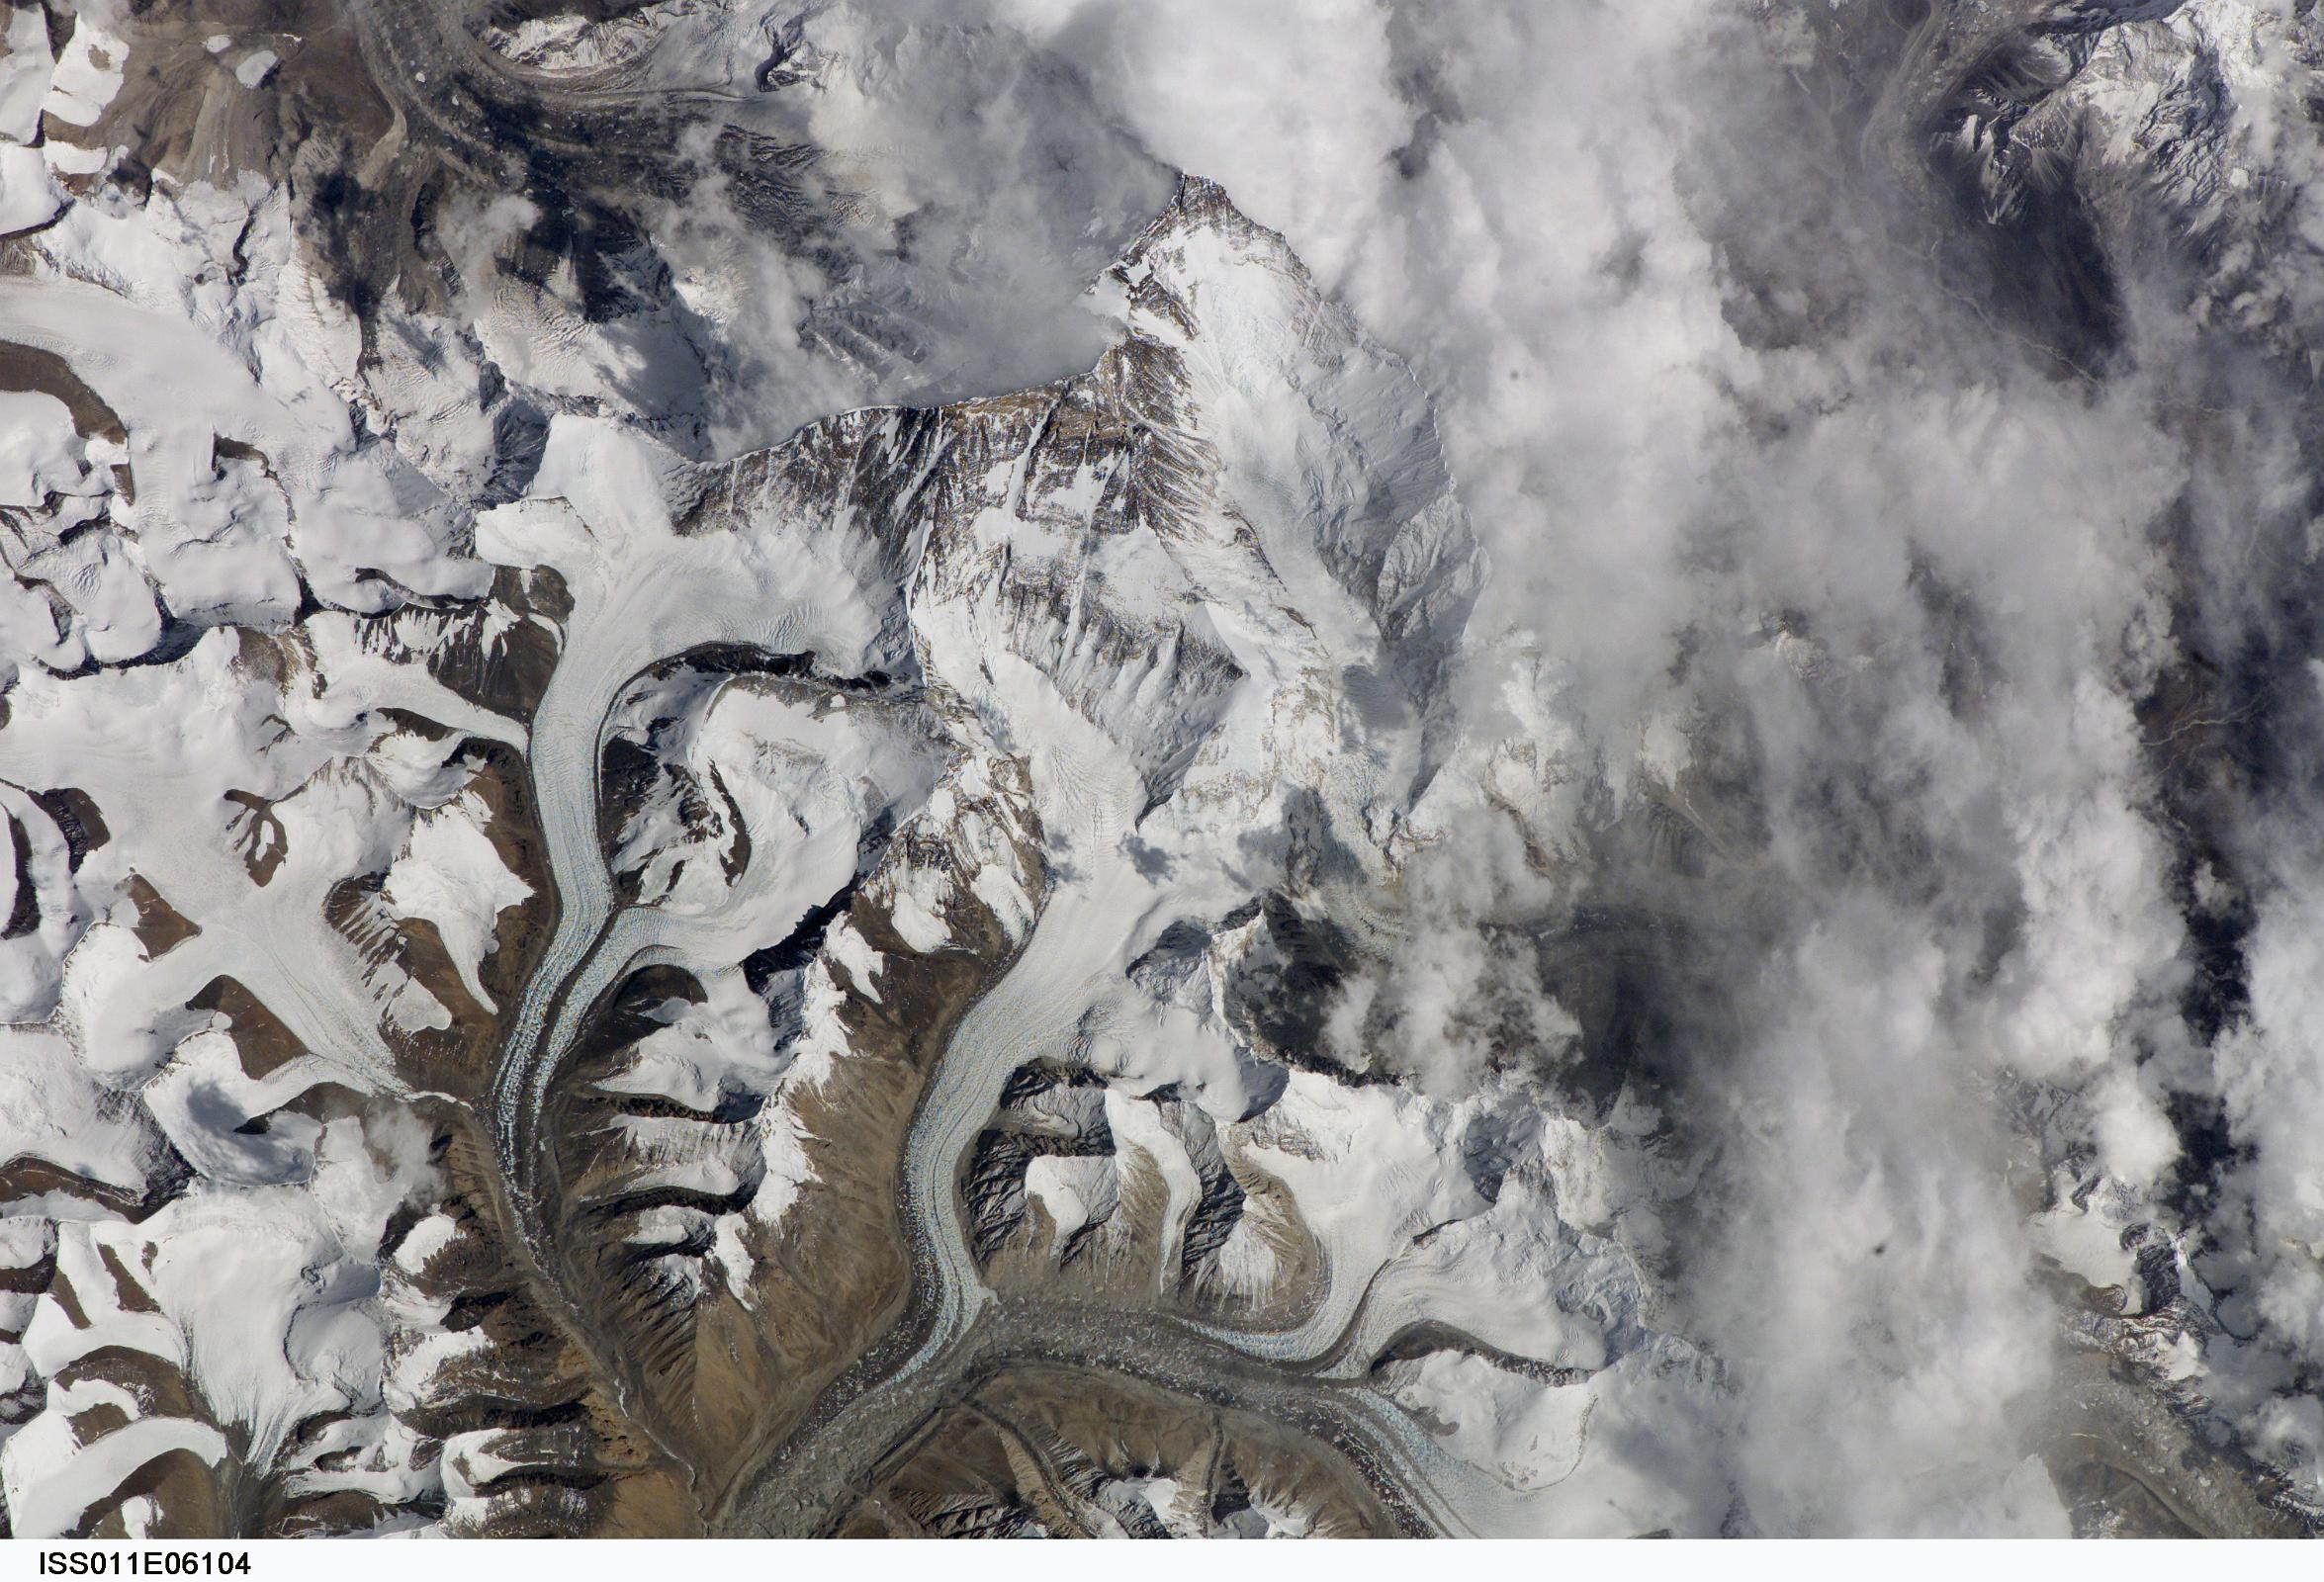 Nasa 2 ISS011-E-6104 Everest North Face, Lhotse, Nuptse From North